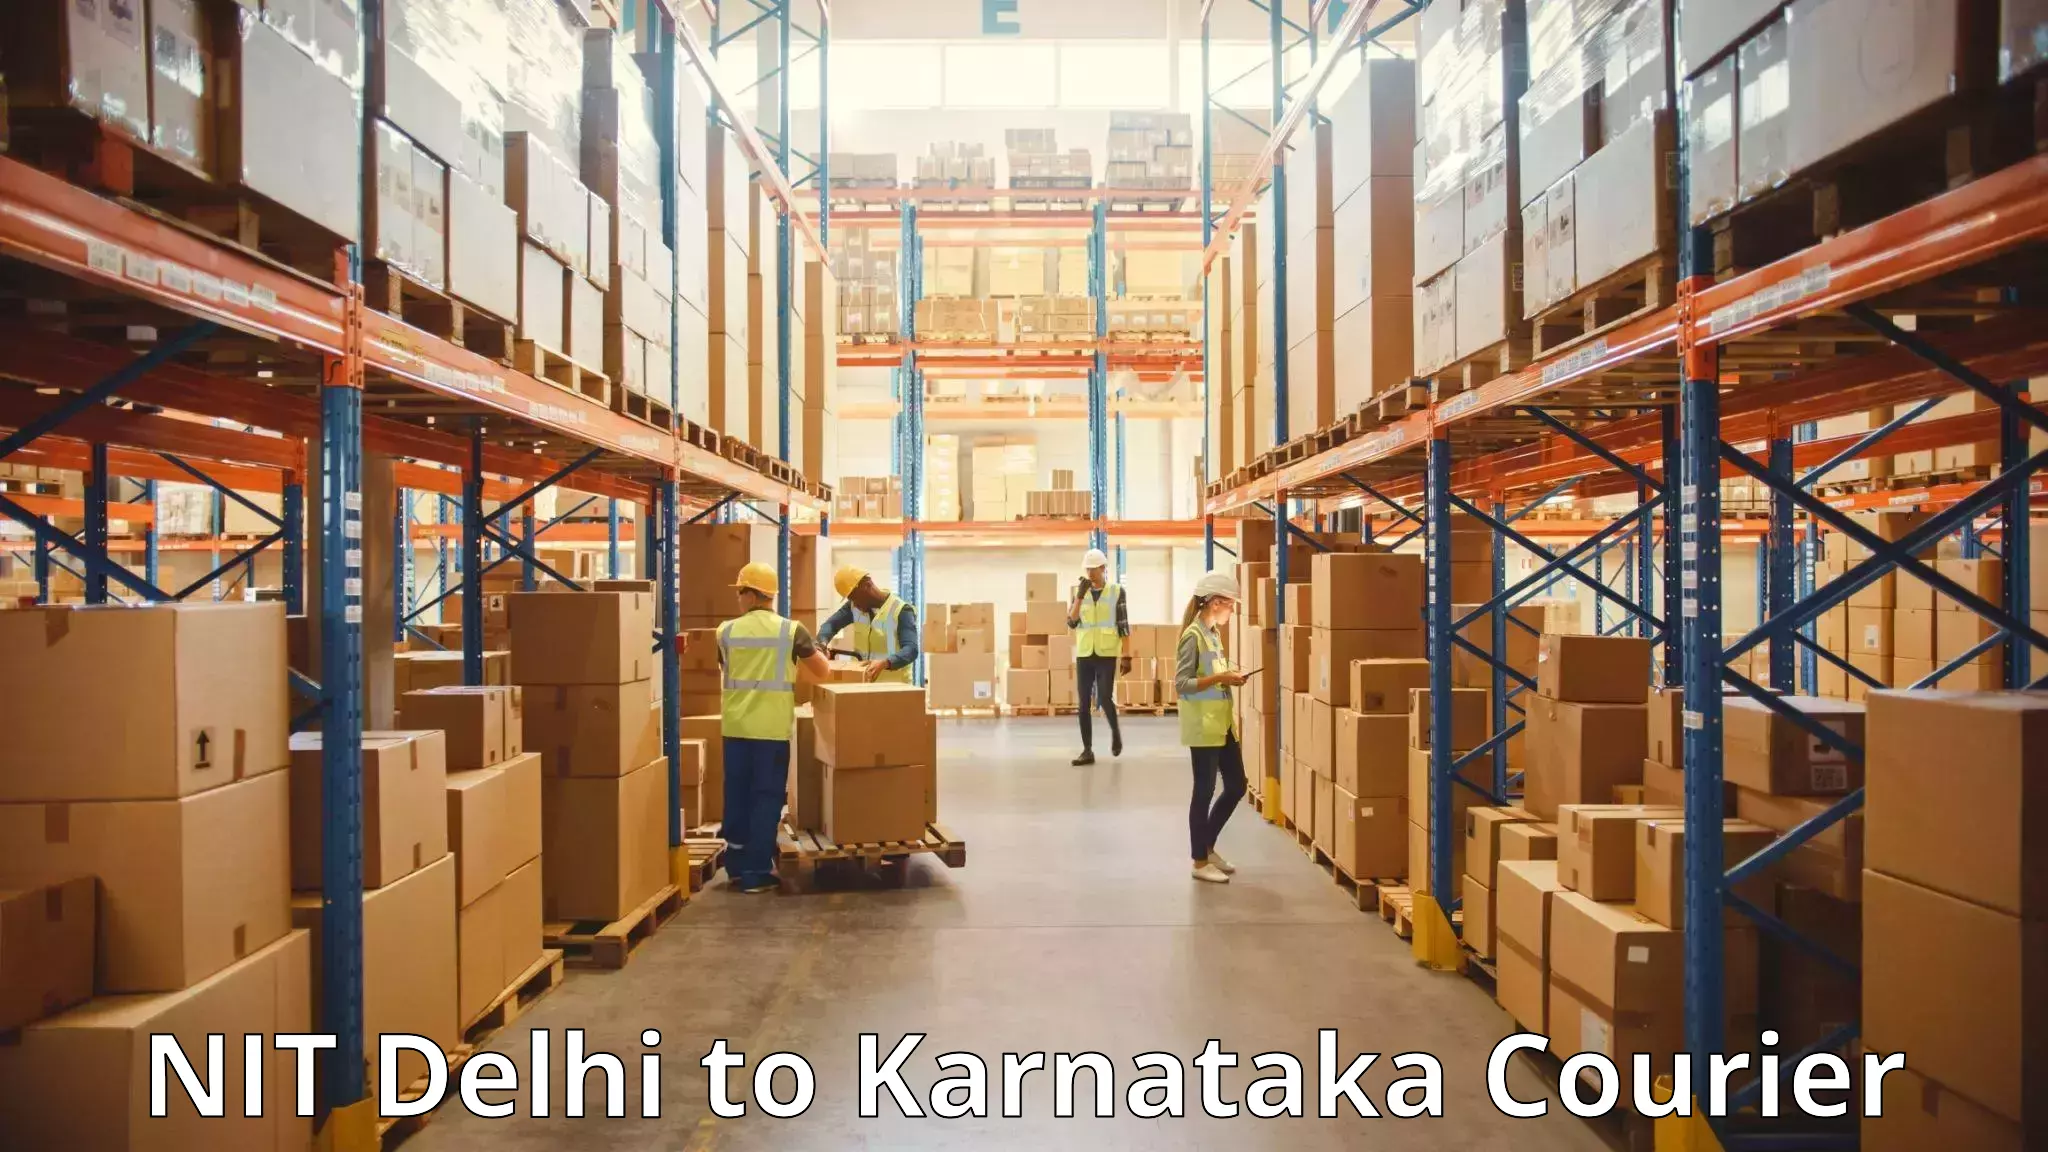 Baggage transport innovation NIT Delhi to Karnataka